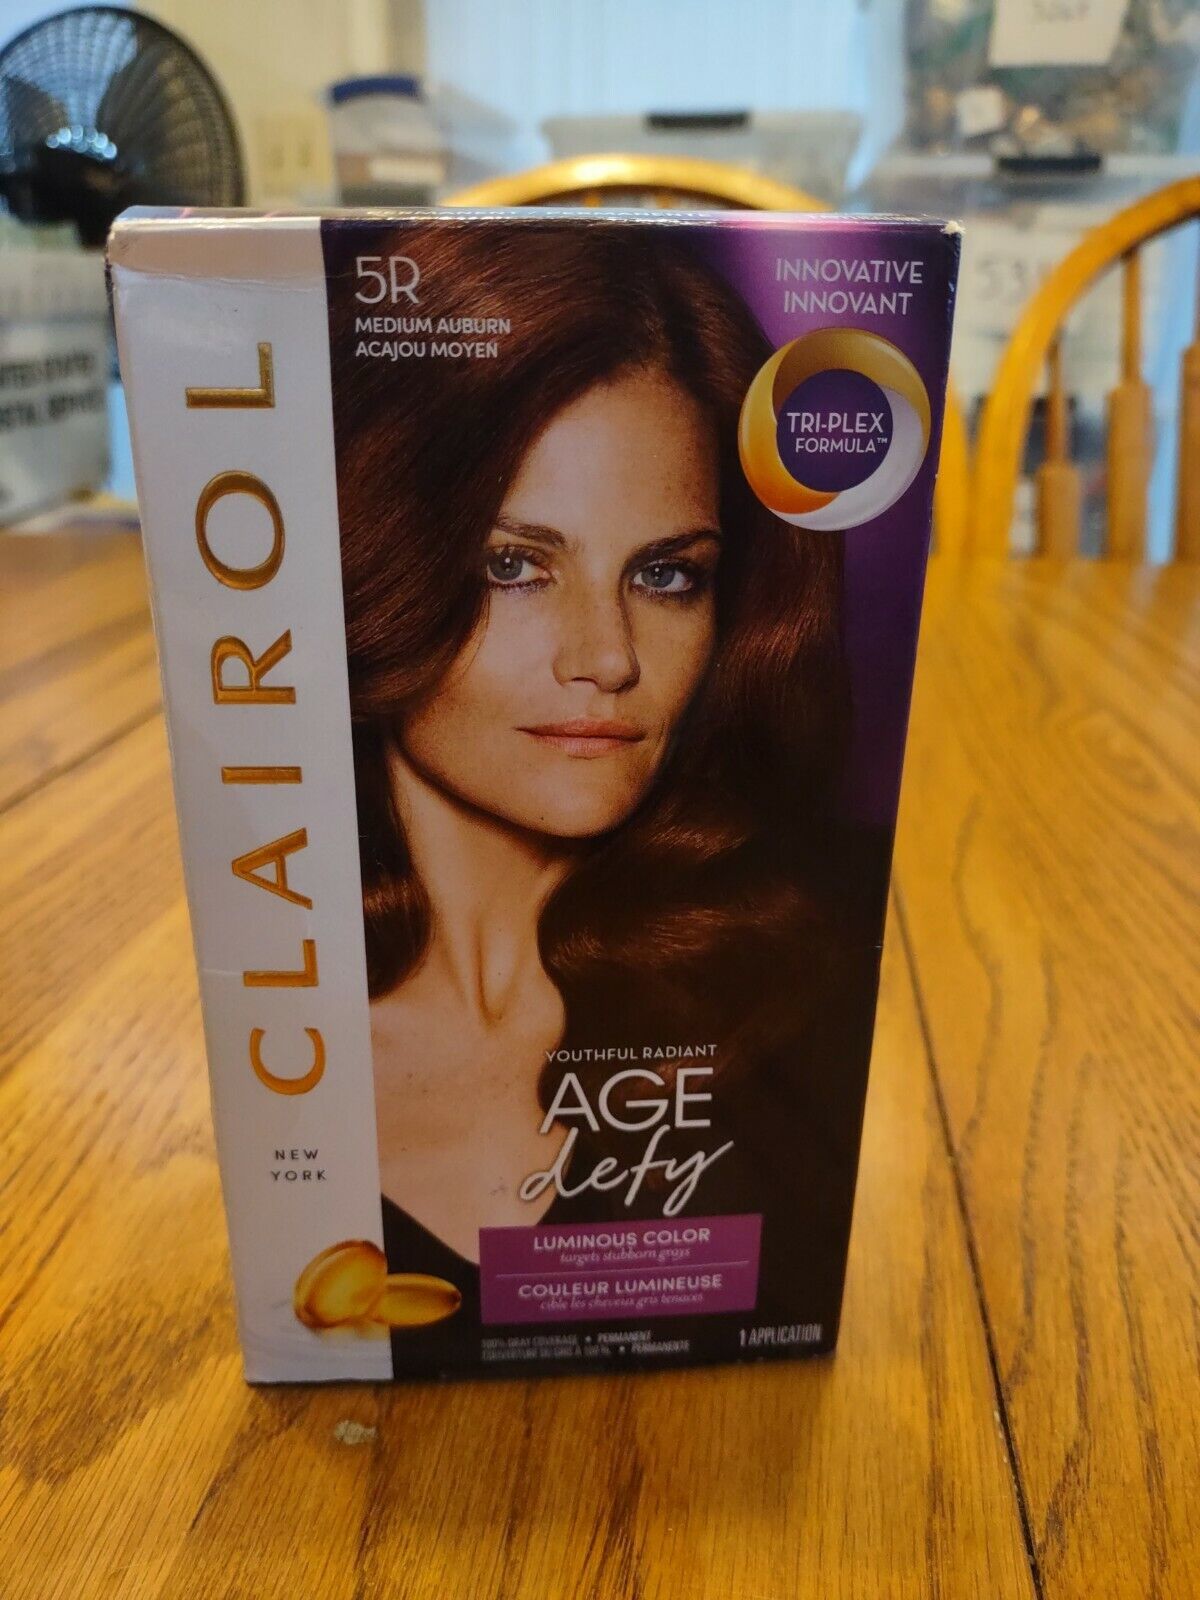 Clairol 5R Medium Auburn Hair Color